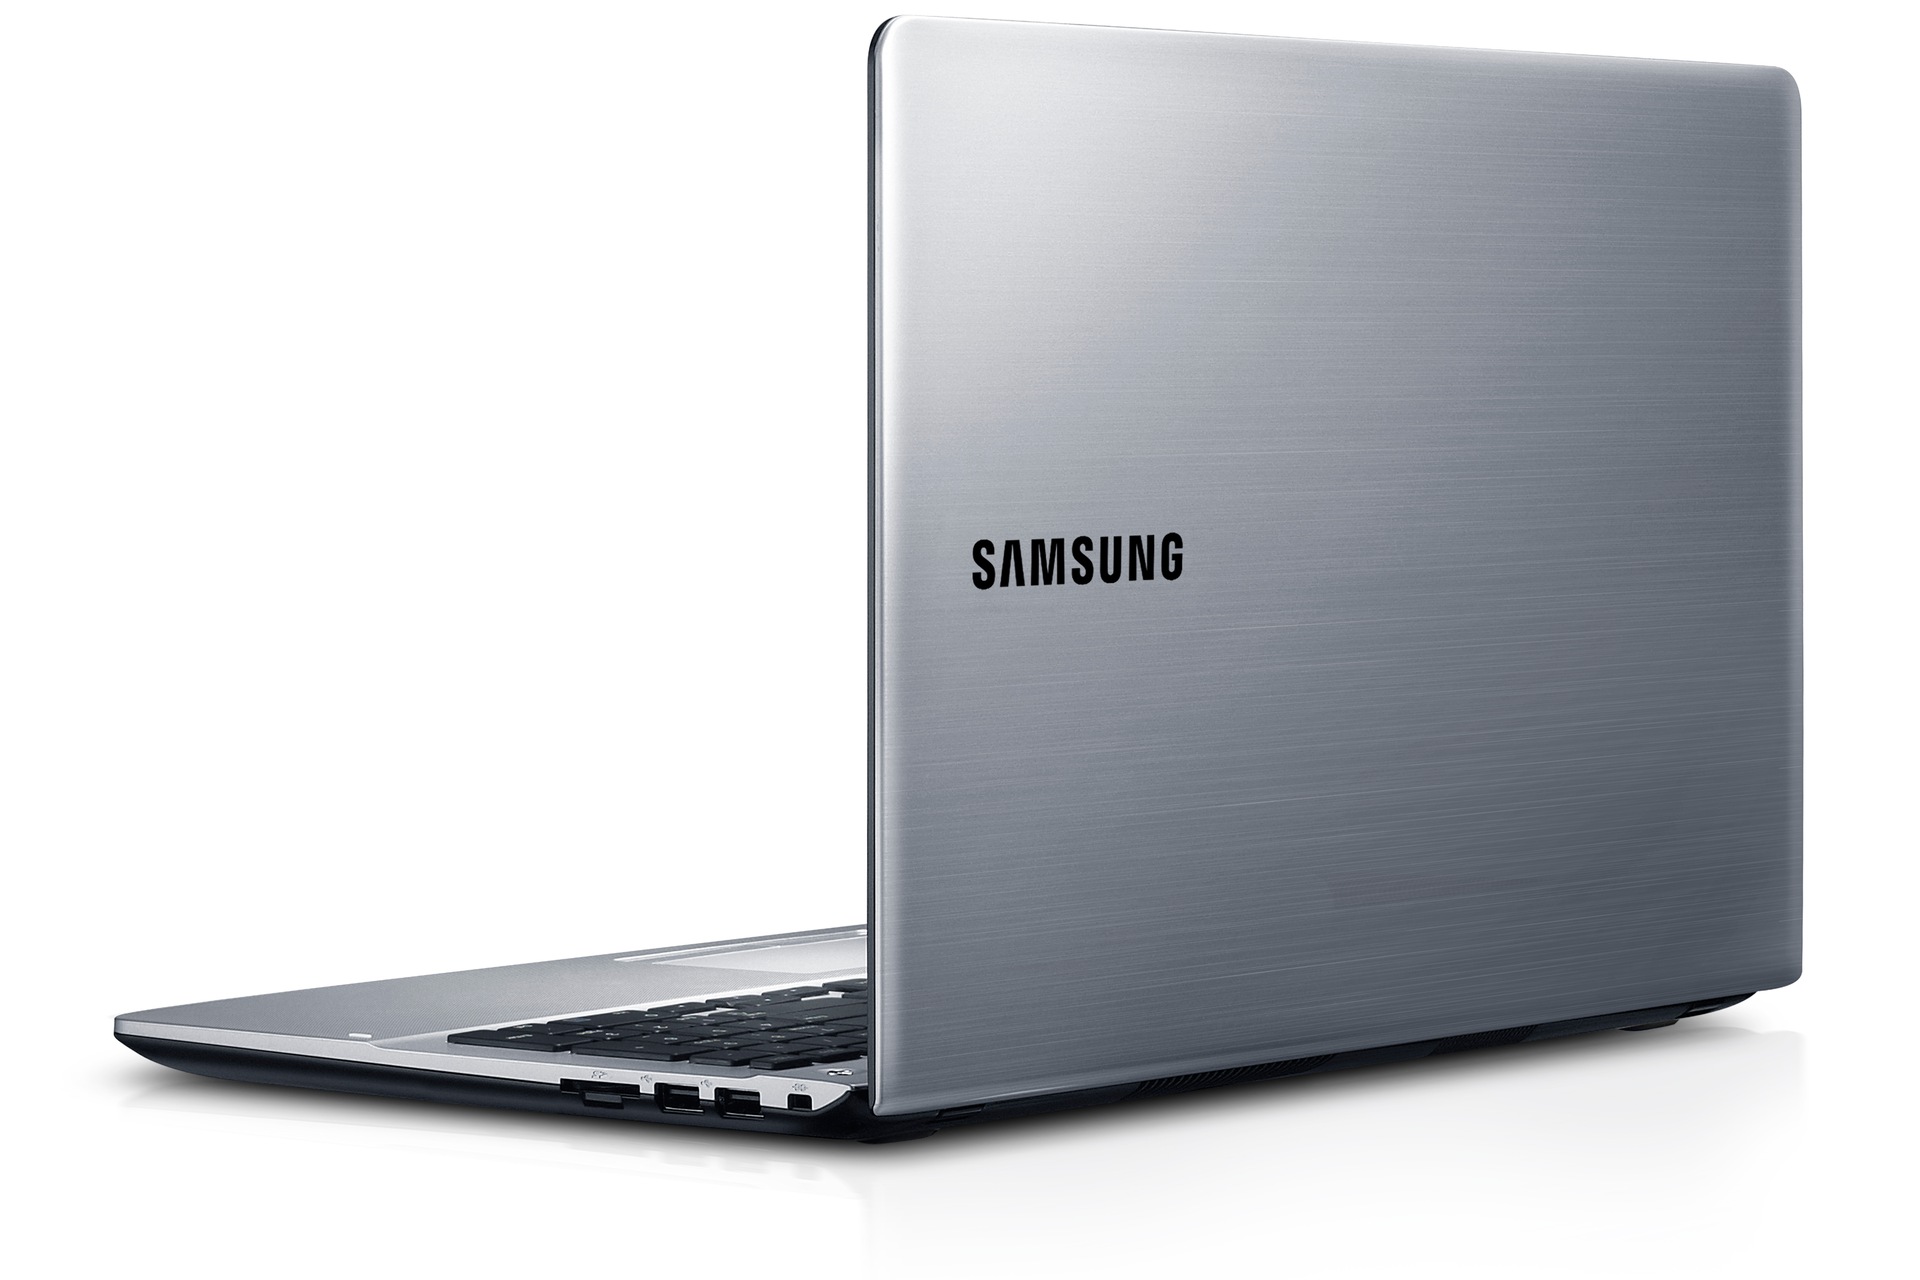 삼성 노트북 시리즈3
NT370R5E-S68
(39.6cm LED 디스플레이)